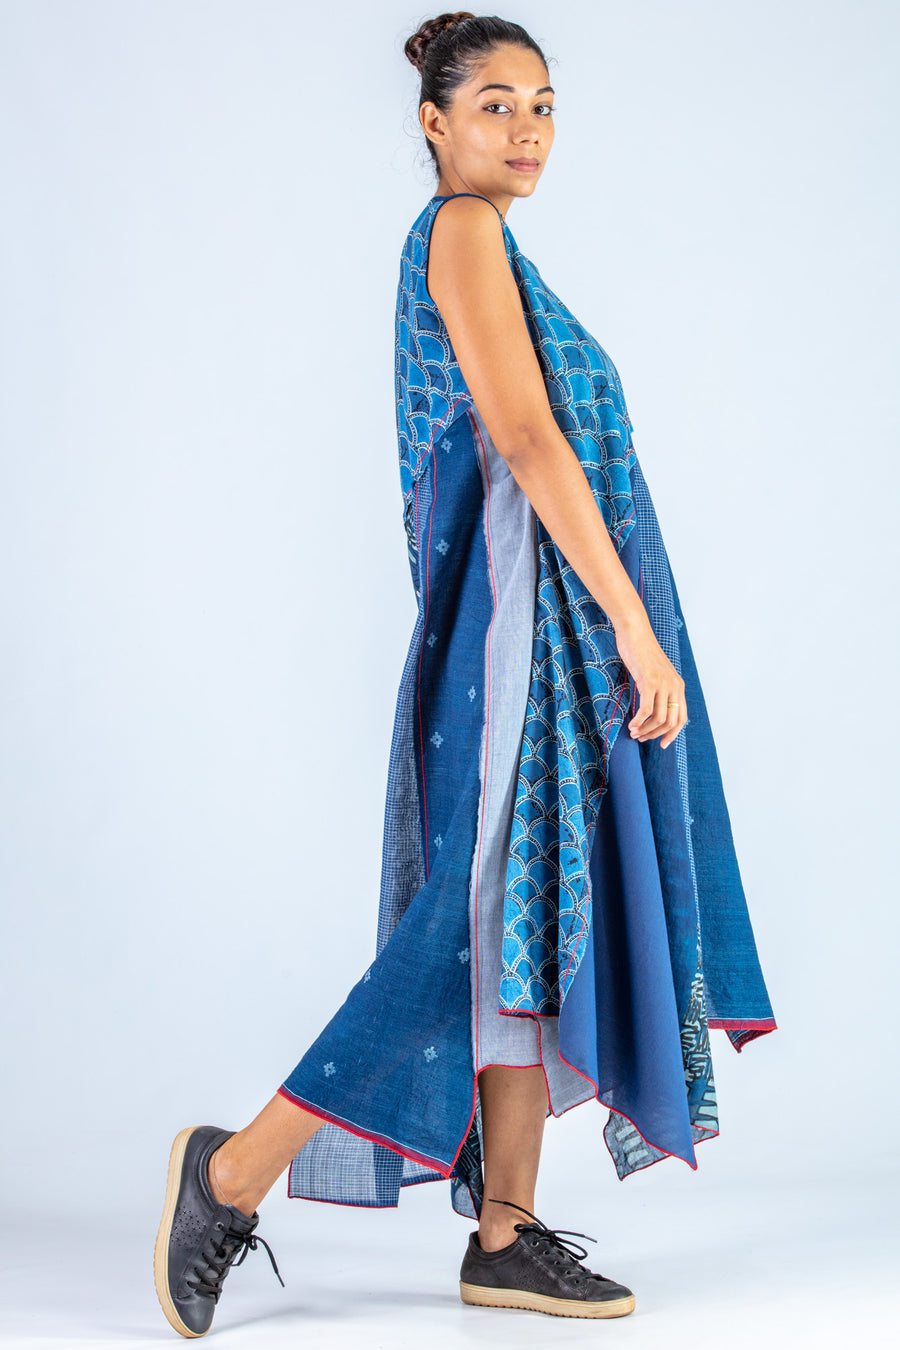 Indigo Upcycled Dress - NAISHA - Upasana Design Studio